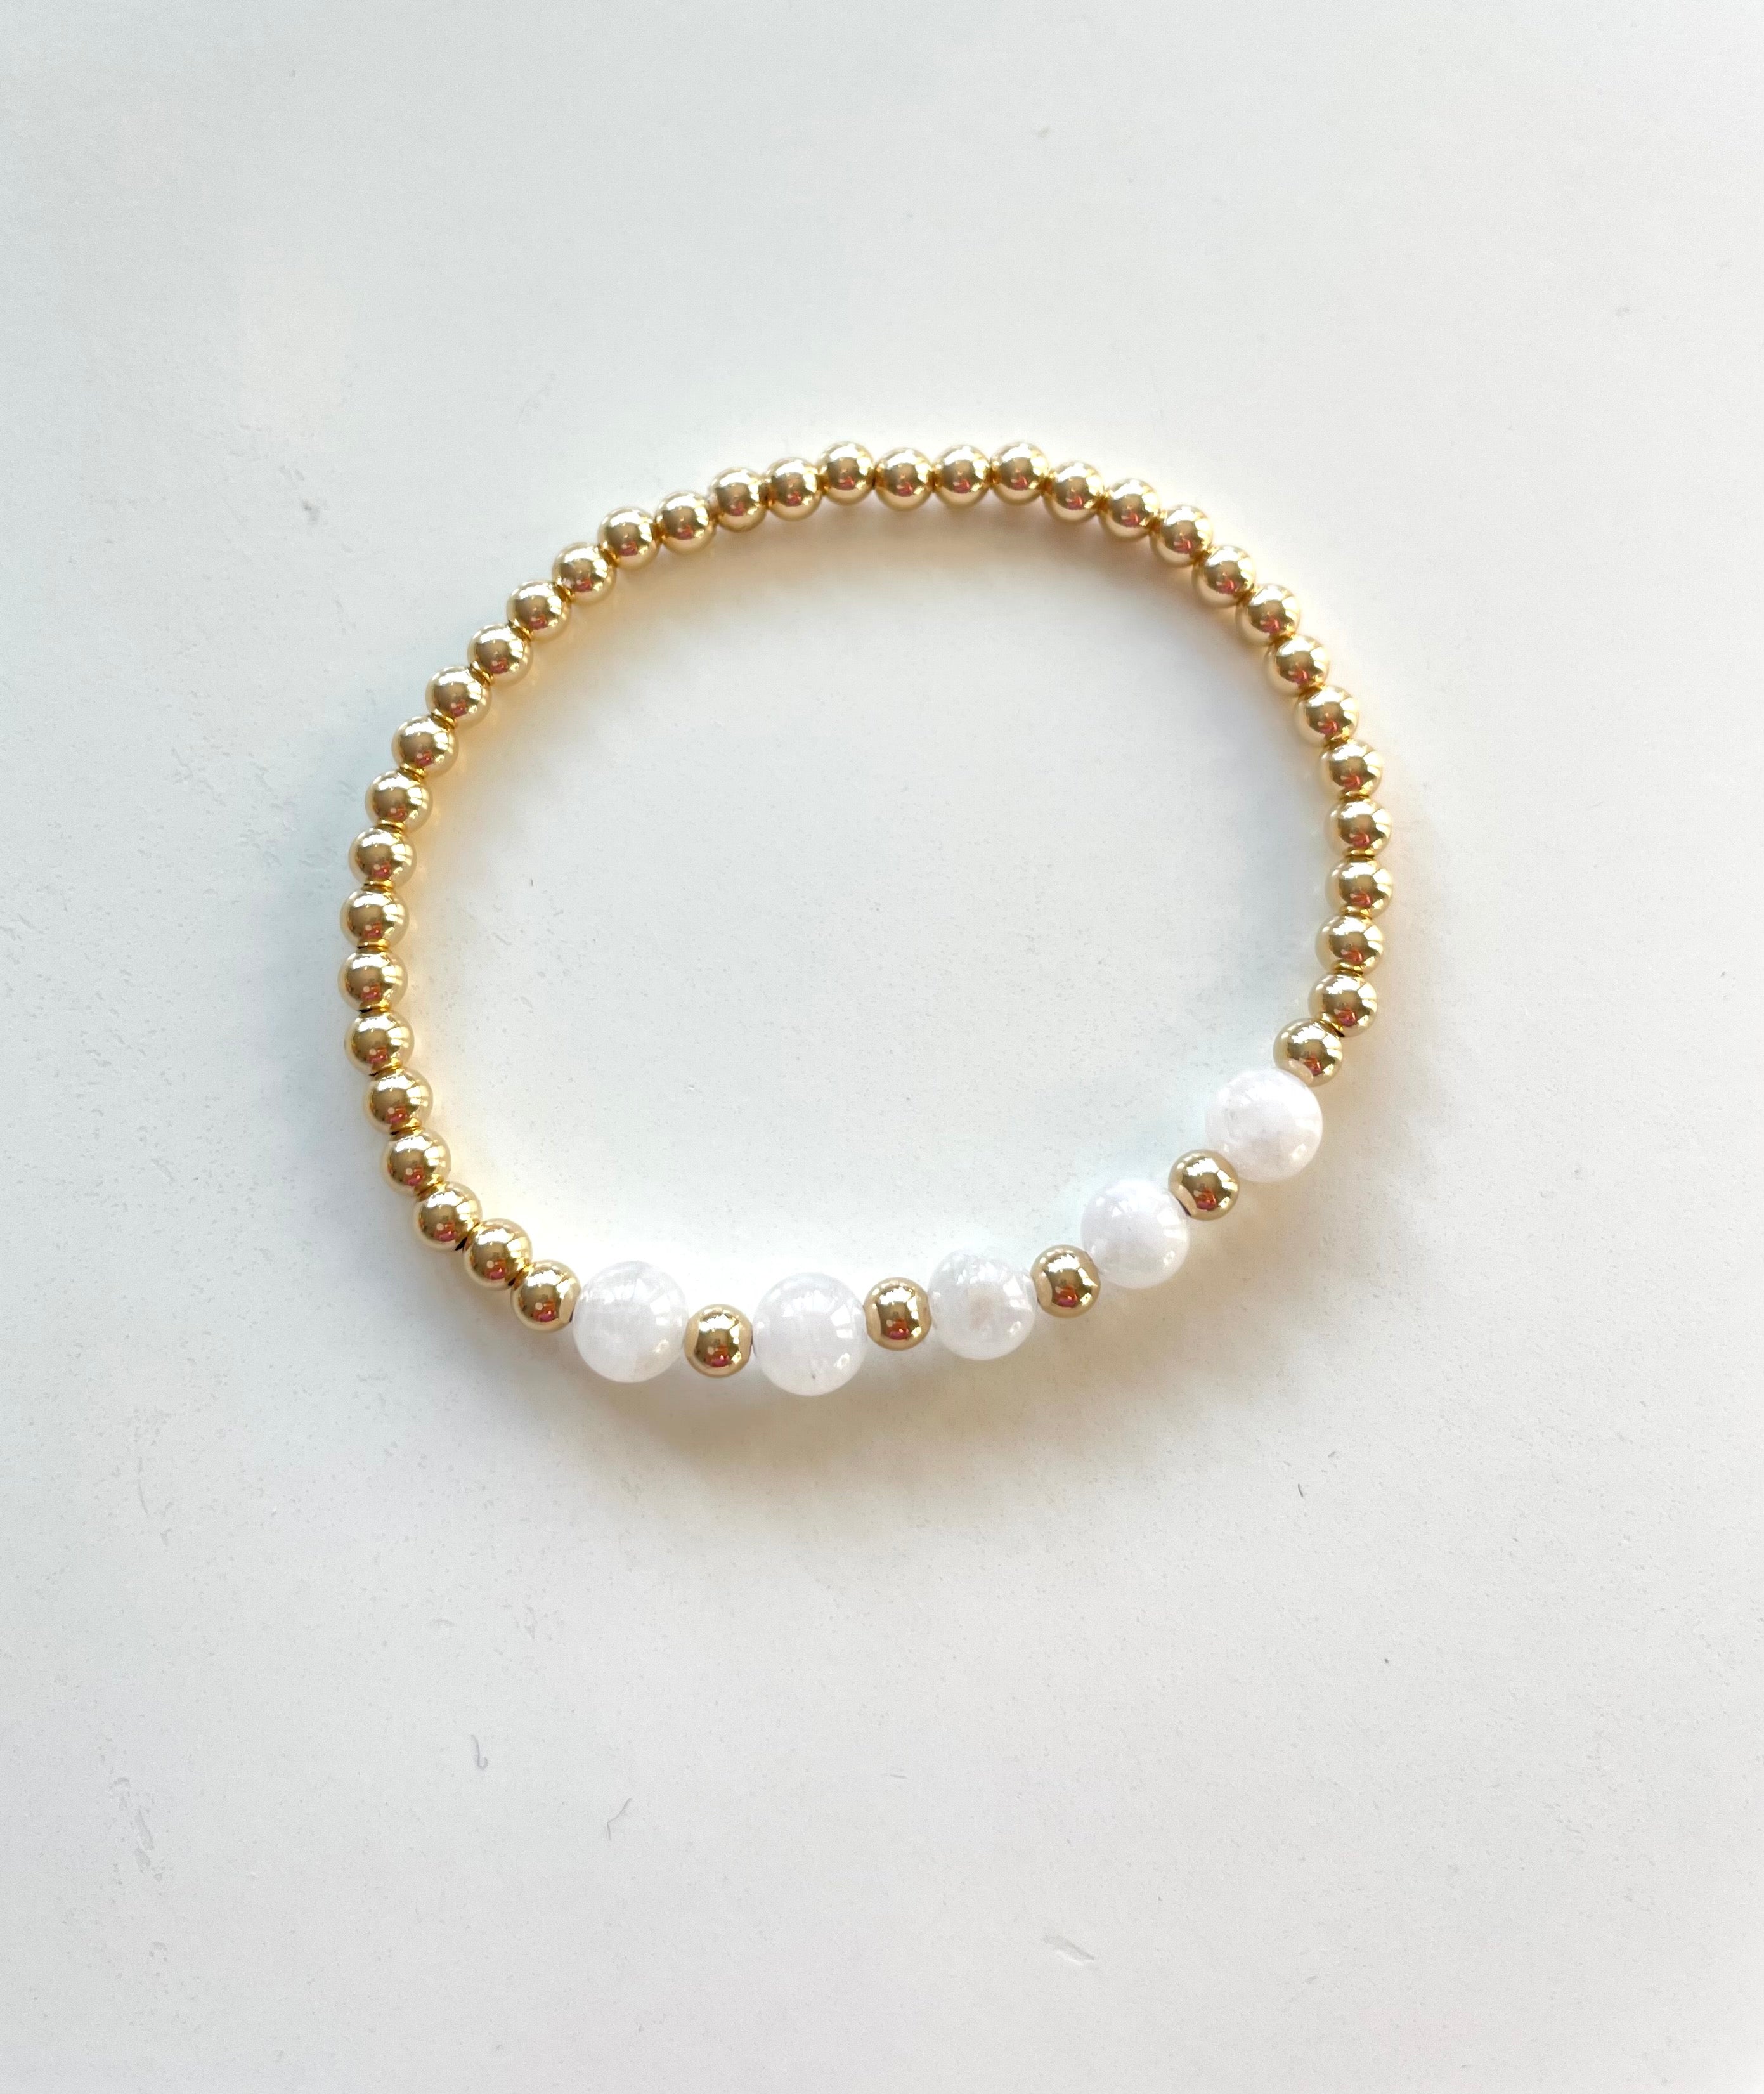 14k Gold Beaded Bracelet with Moonstone